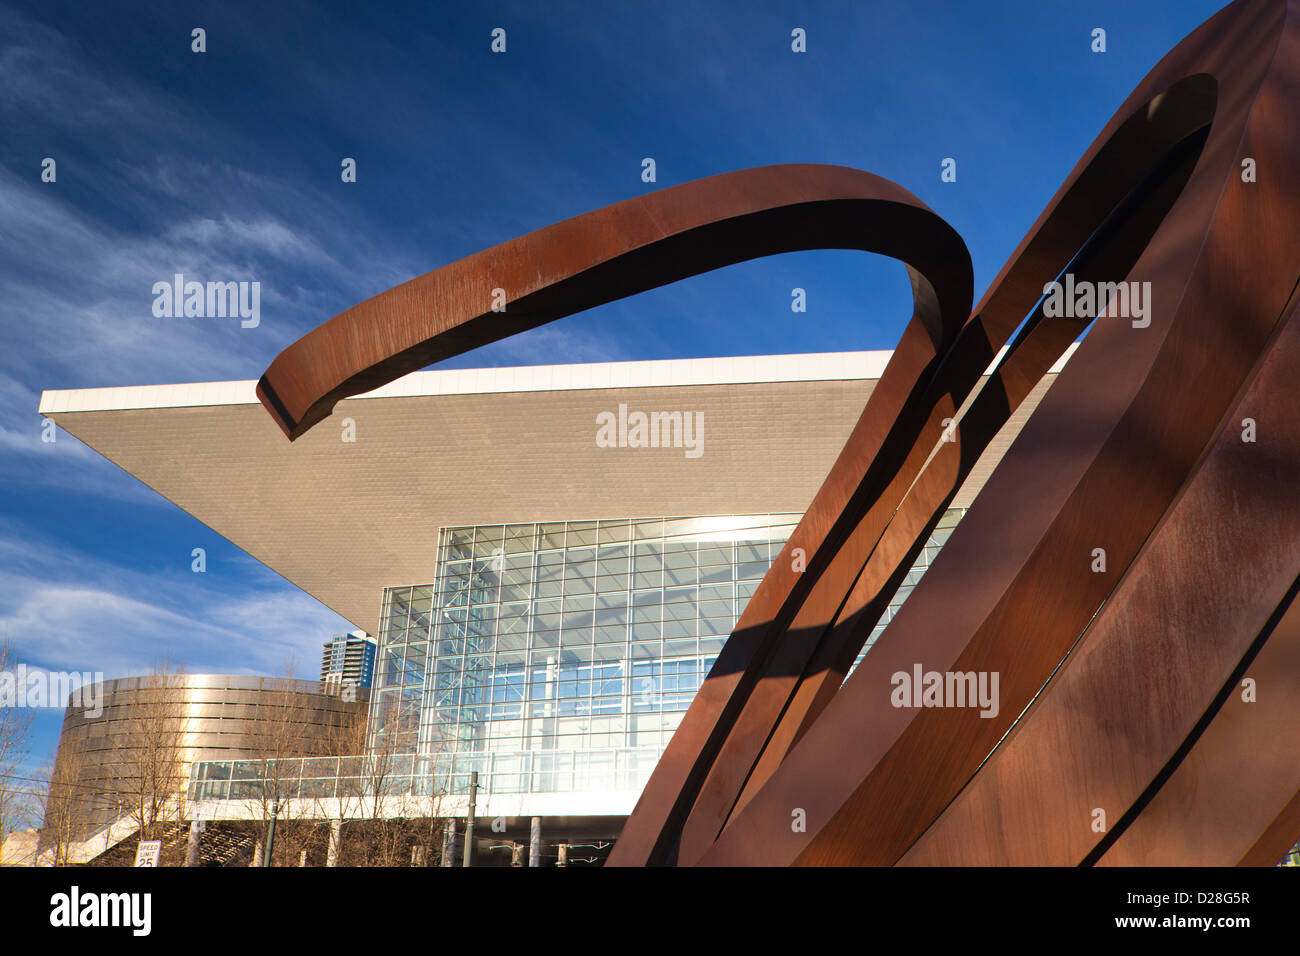 USA, Colorado, Denver, Colorado Convention Center, exterior Stock Photo